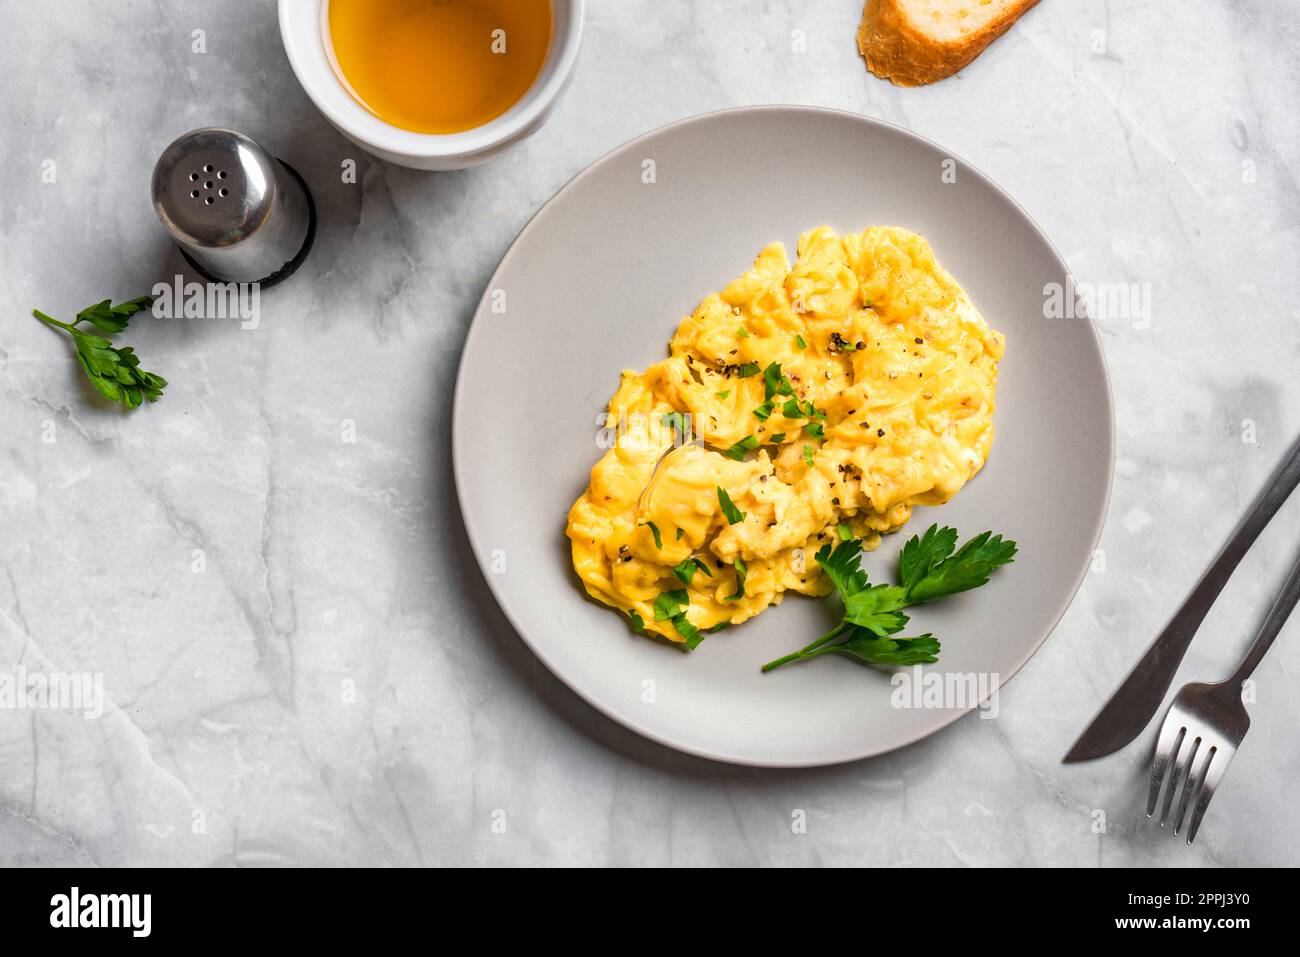 Huevos revueltos para el desayuno. Comida cetogénica, desayuno saludable con huevo revuelto. Foto de stock